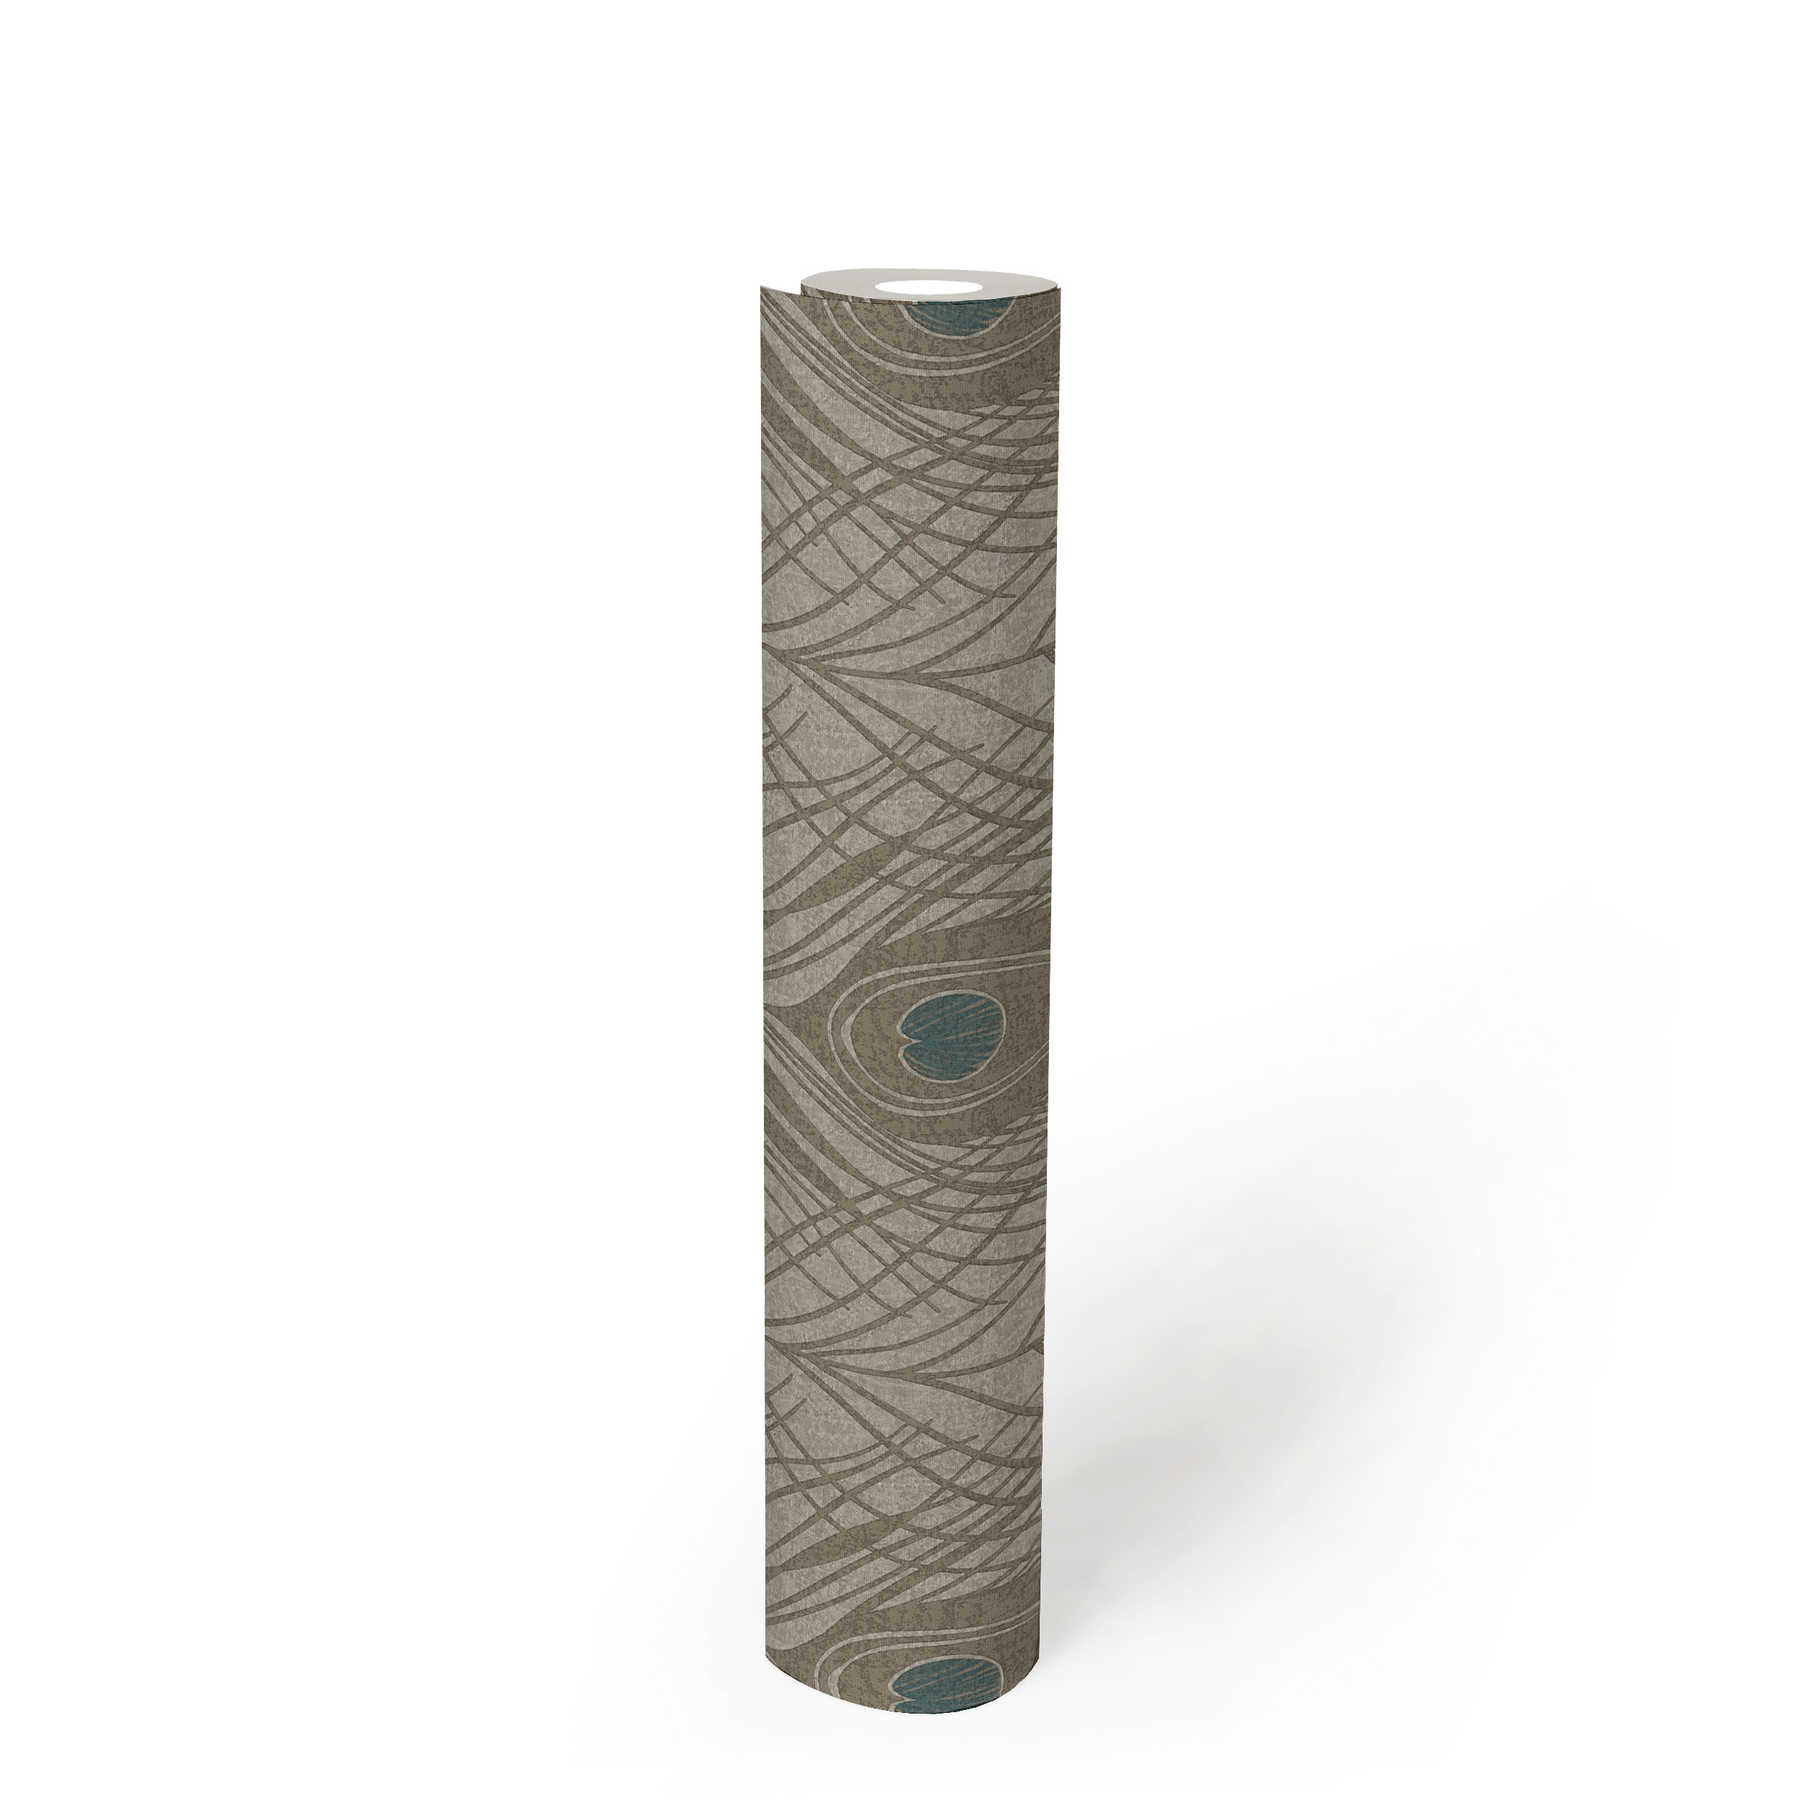             Braune Vliestapete mit Pfauenfedern, detailliert – Braun, Grau, Blau
        